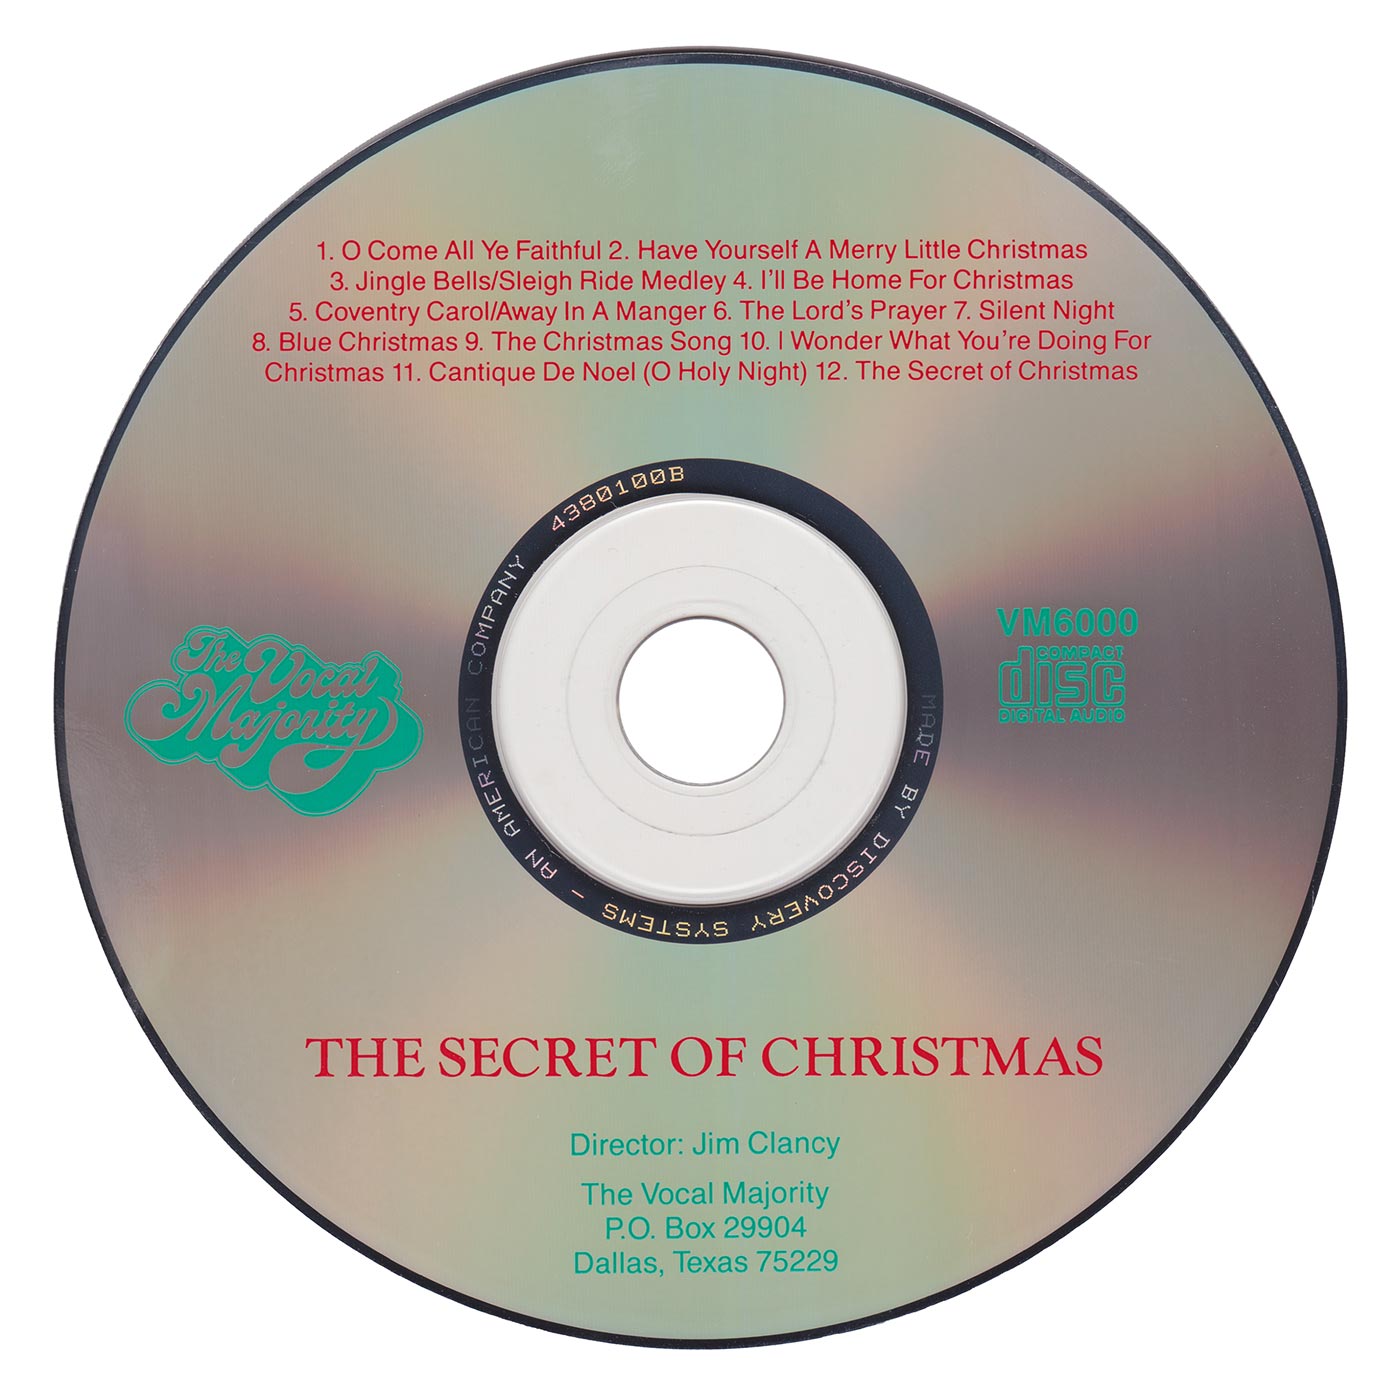 Disc Art: The Secret of Christmas